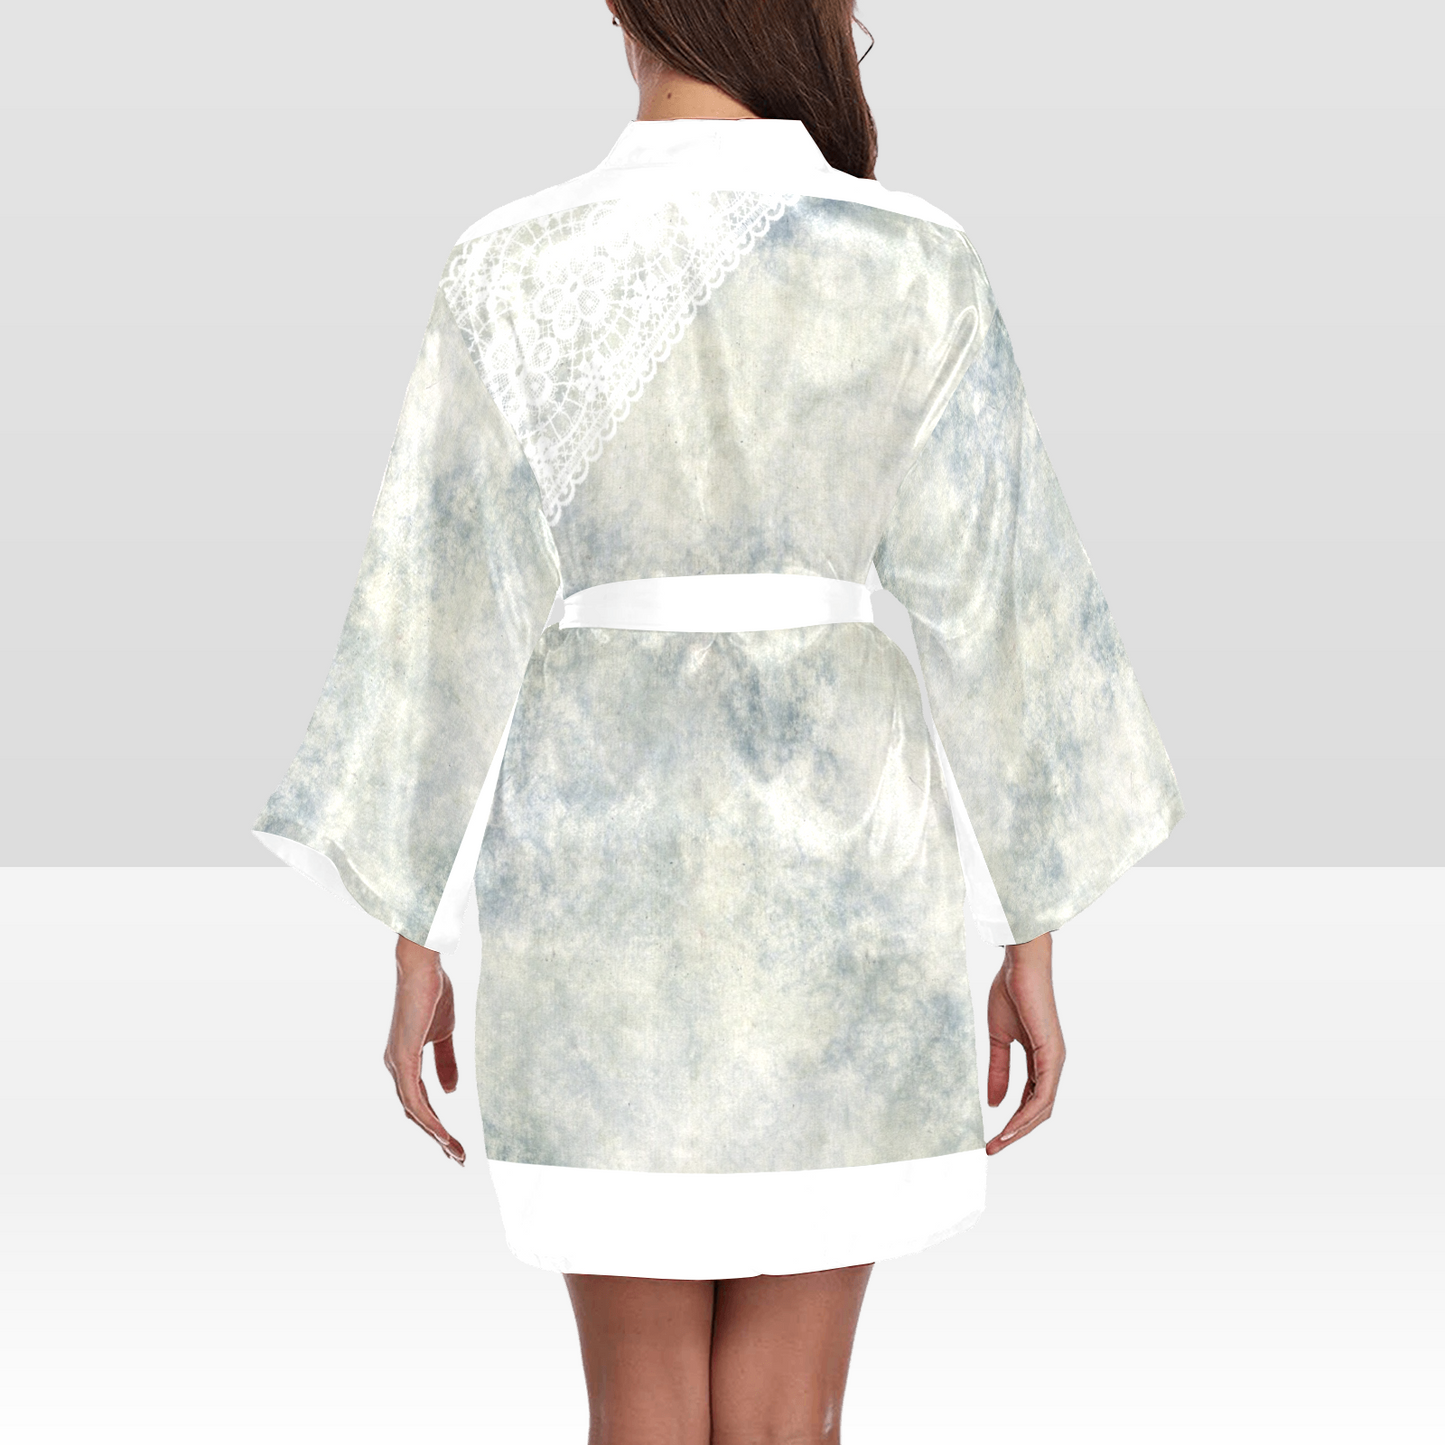 Victorian Lace Kimono Robe, Black or White Trim, Sizes XS to 2XL, Design 36